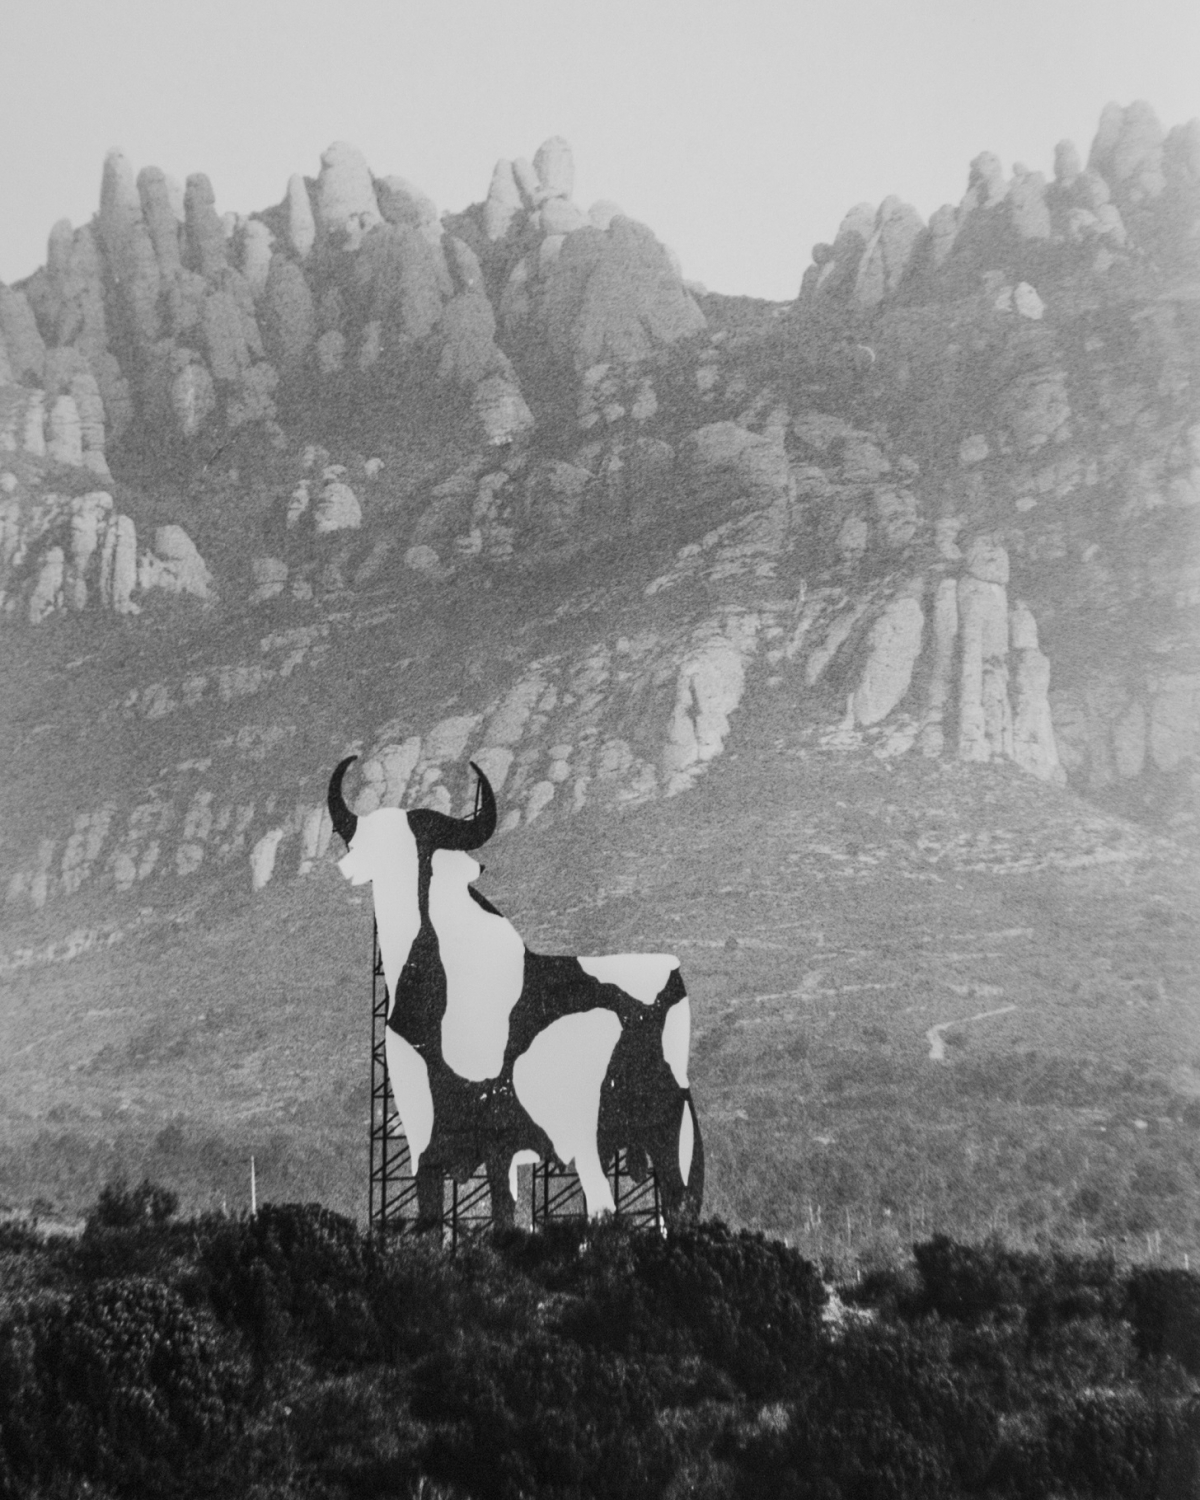 El 'Toru' dels artistes igualadins: convertit en vaca FOTO: R. Velàzquez